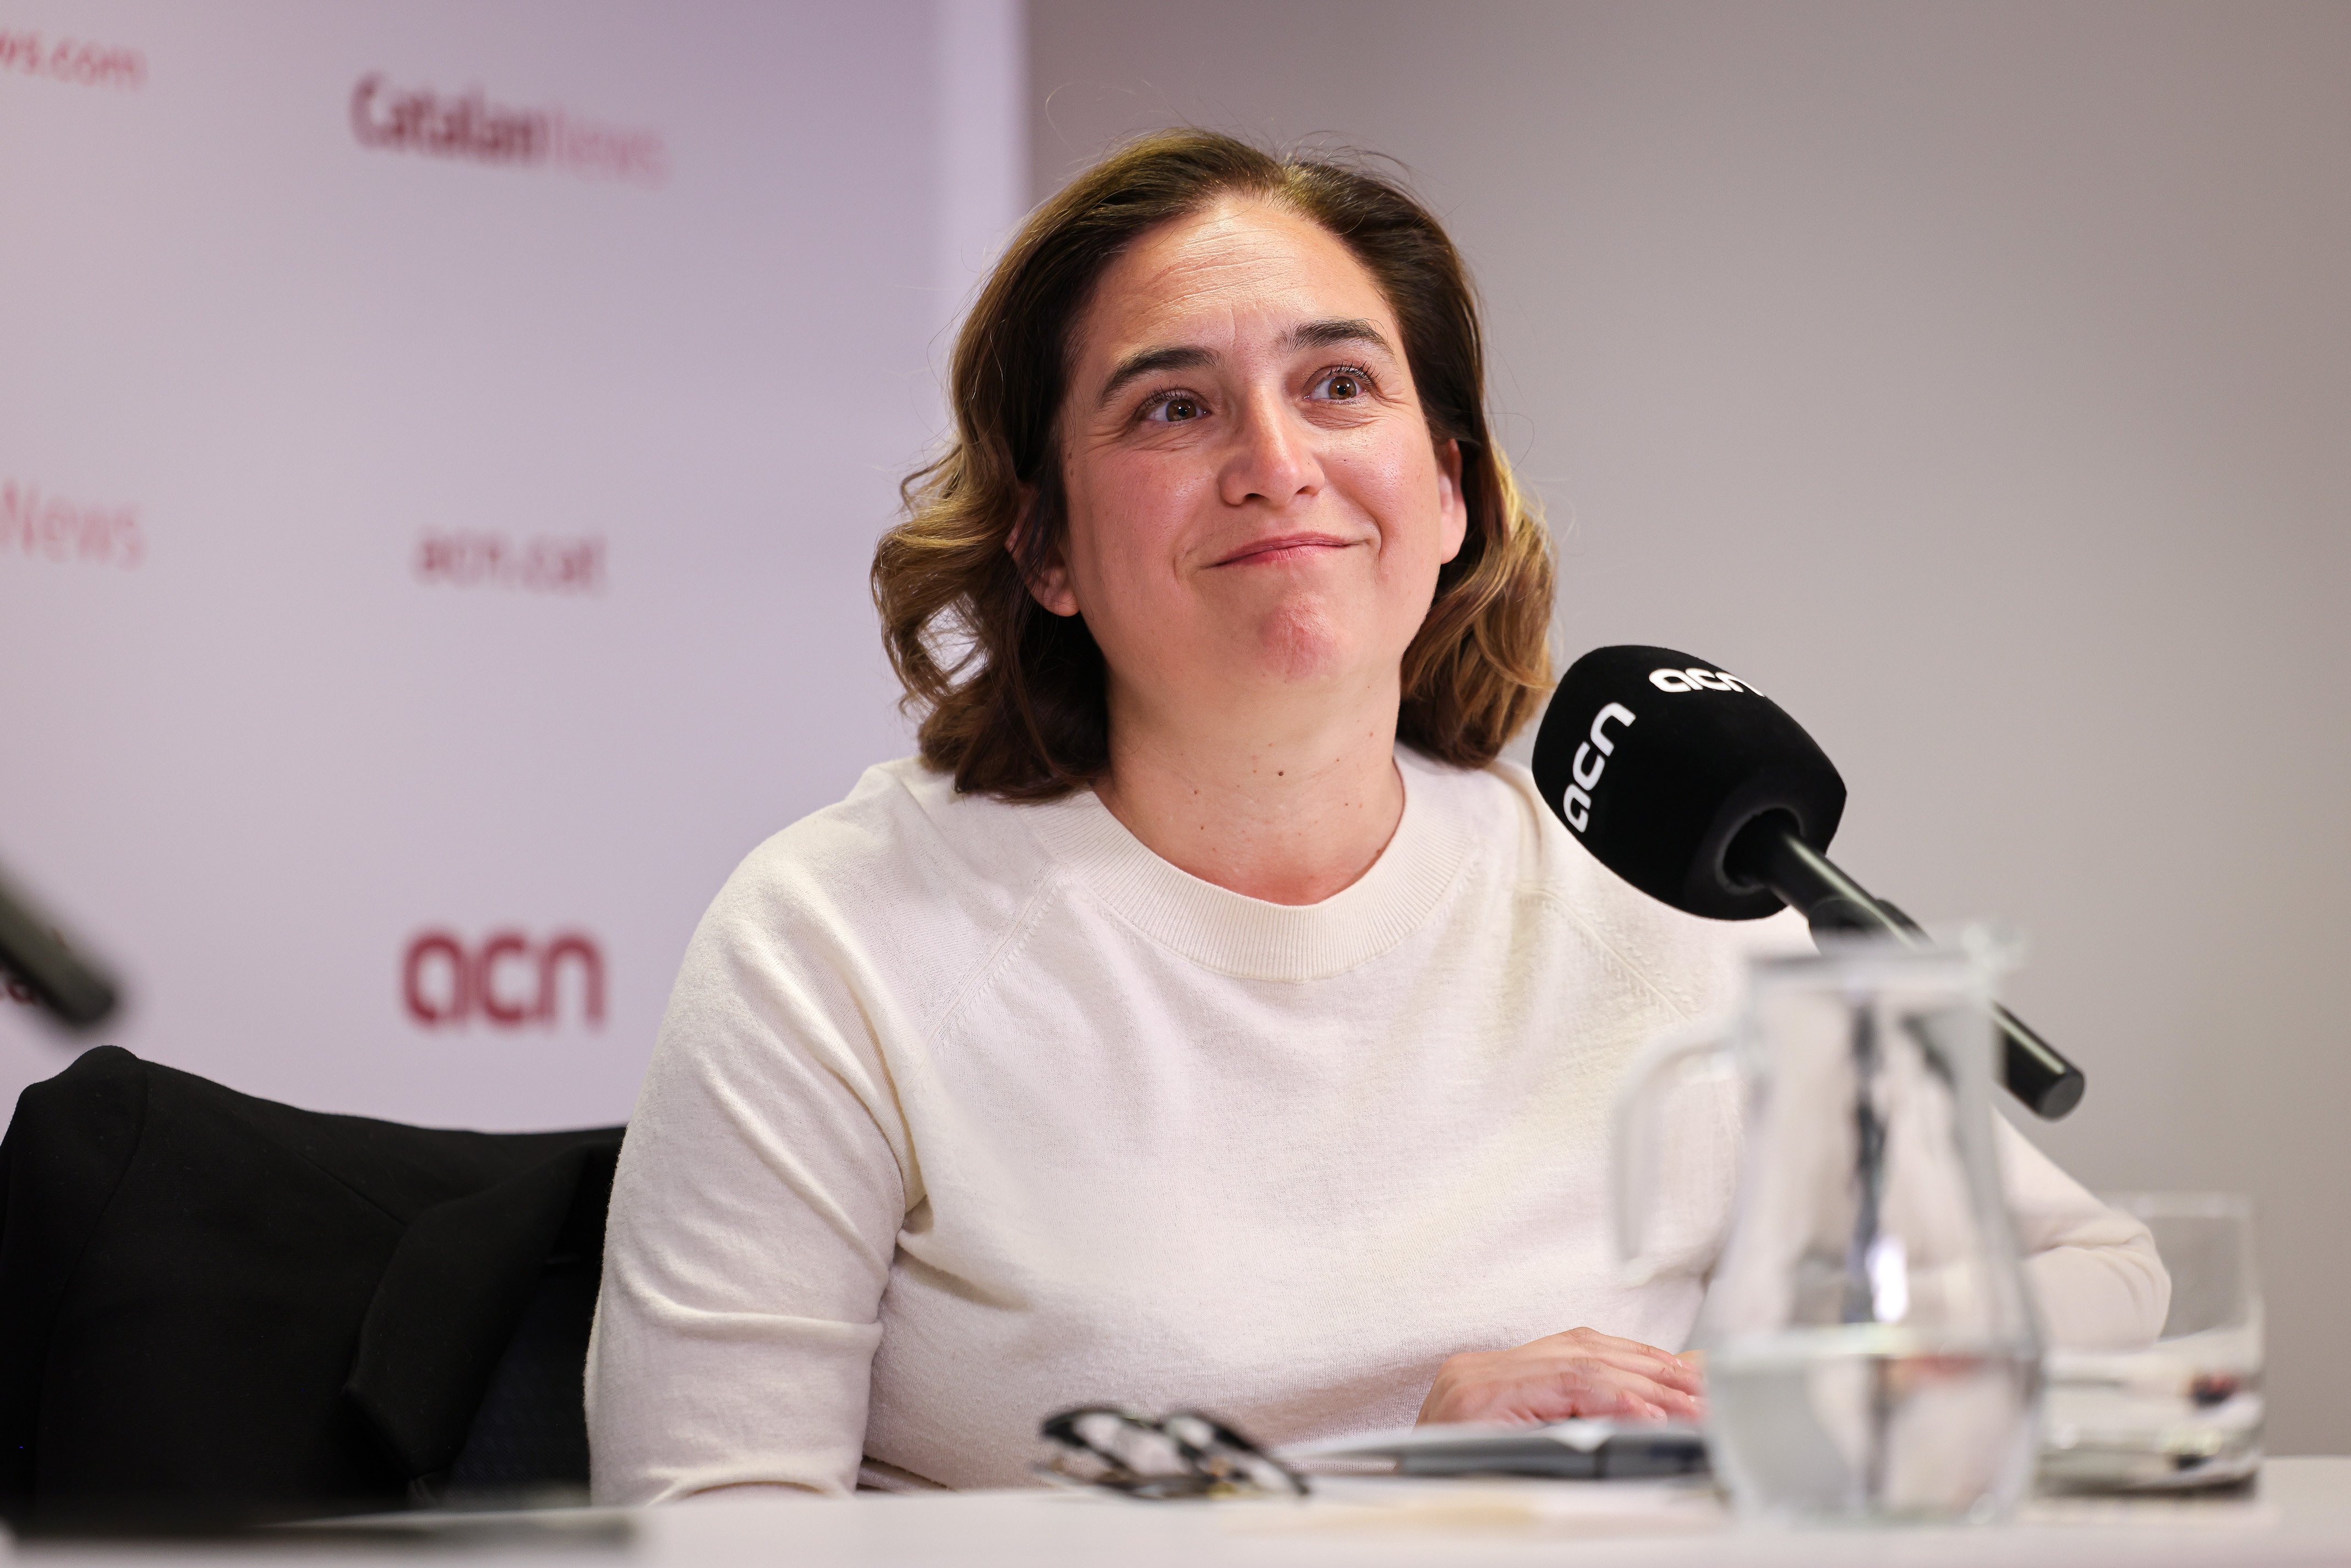 Ada Colau descarta que el seu futur passi per la política espanyola: “No em veig a Madrid”